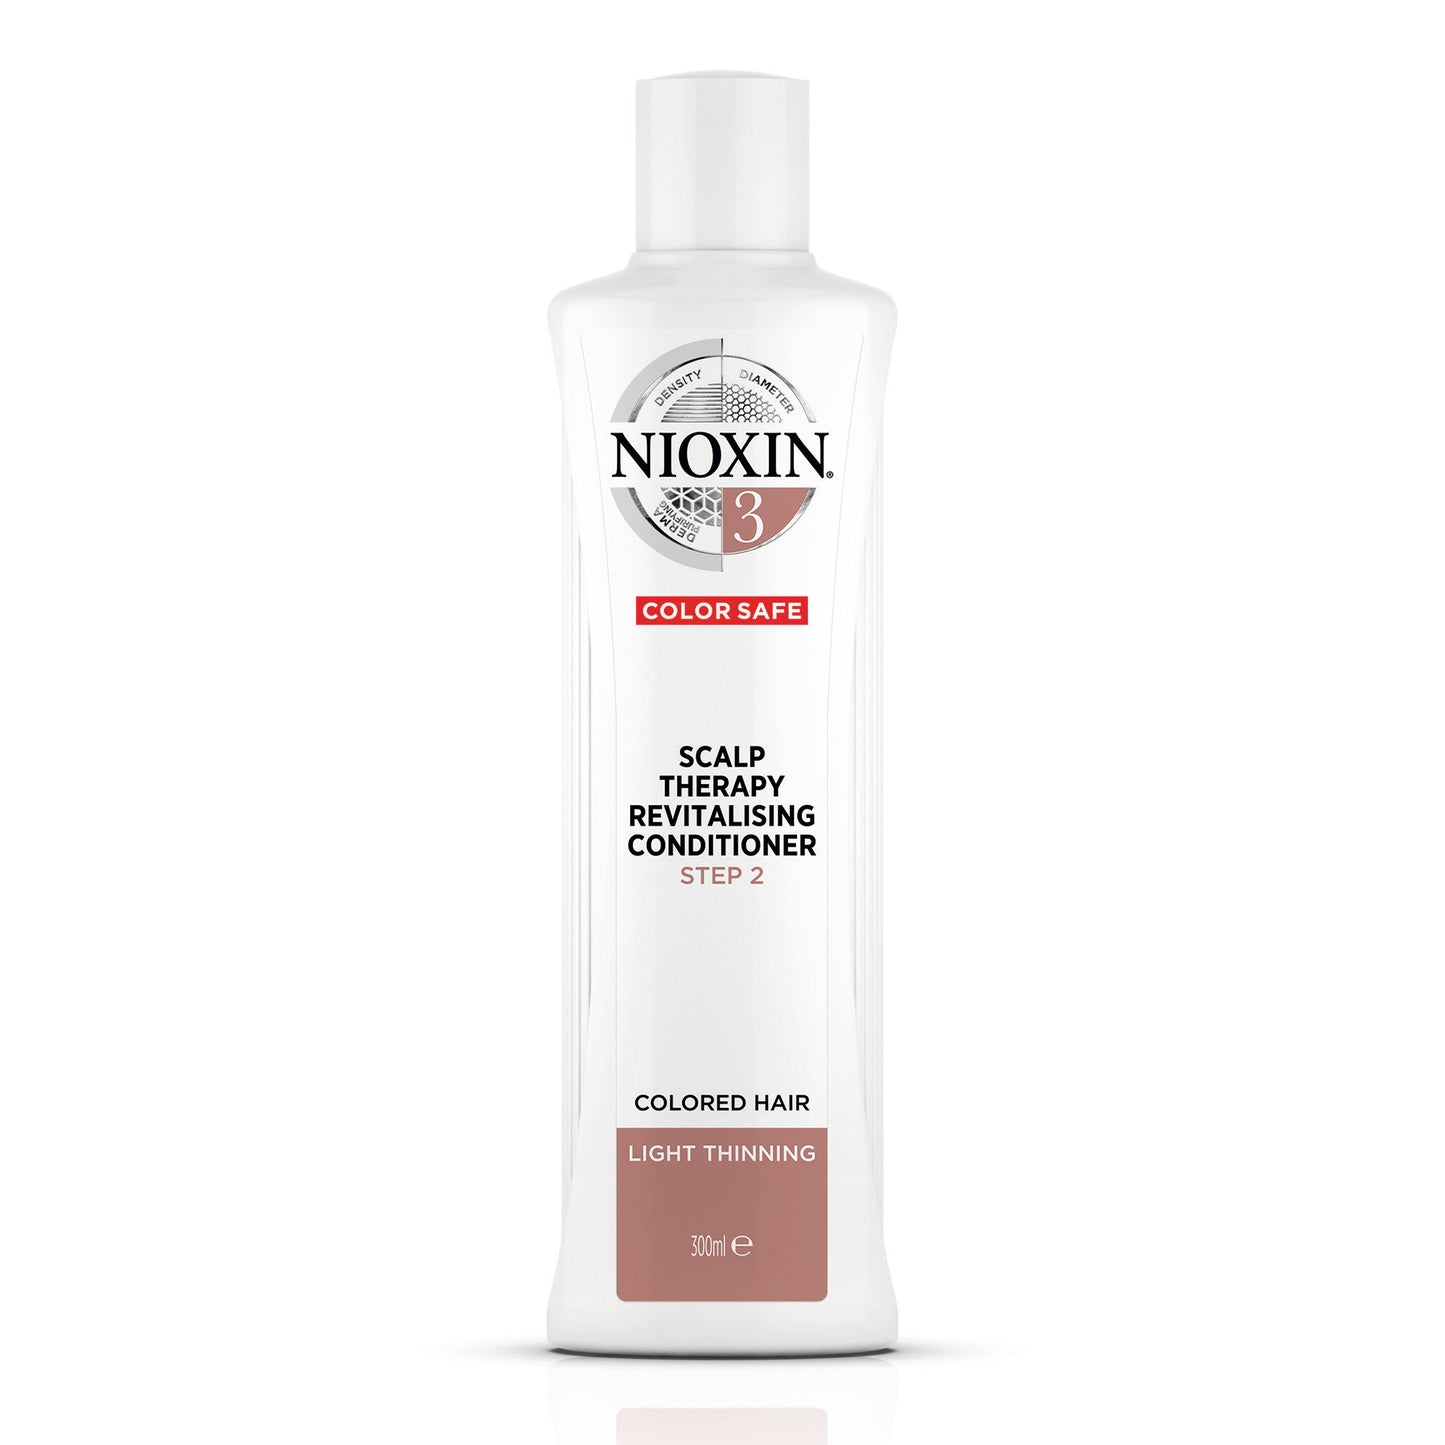 NIOXIN 3 Color Safe Scalp Therapy Revitalising Conditioner 300ml